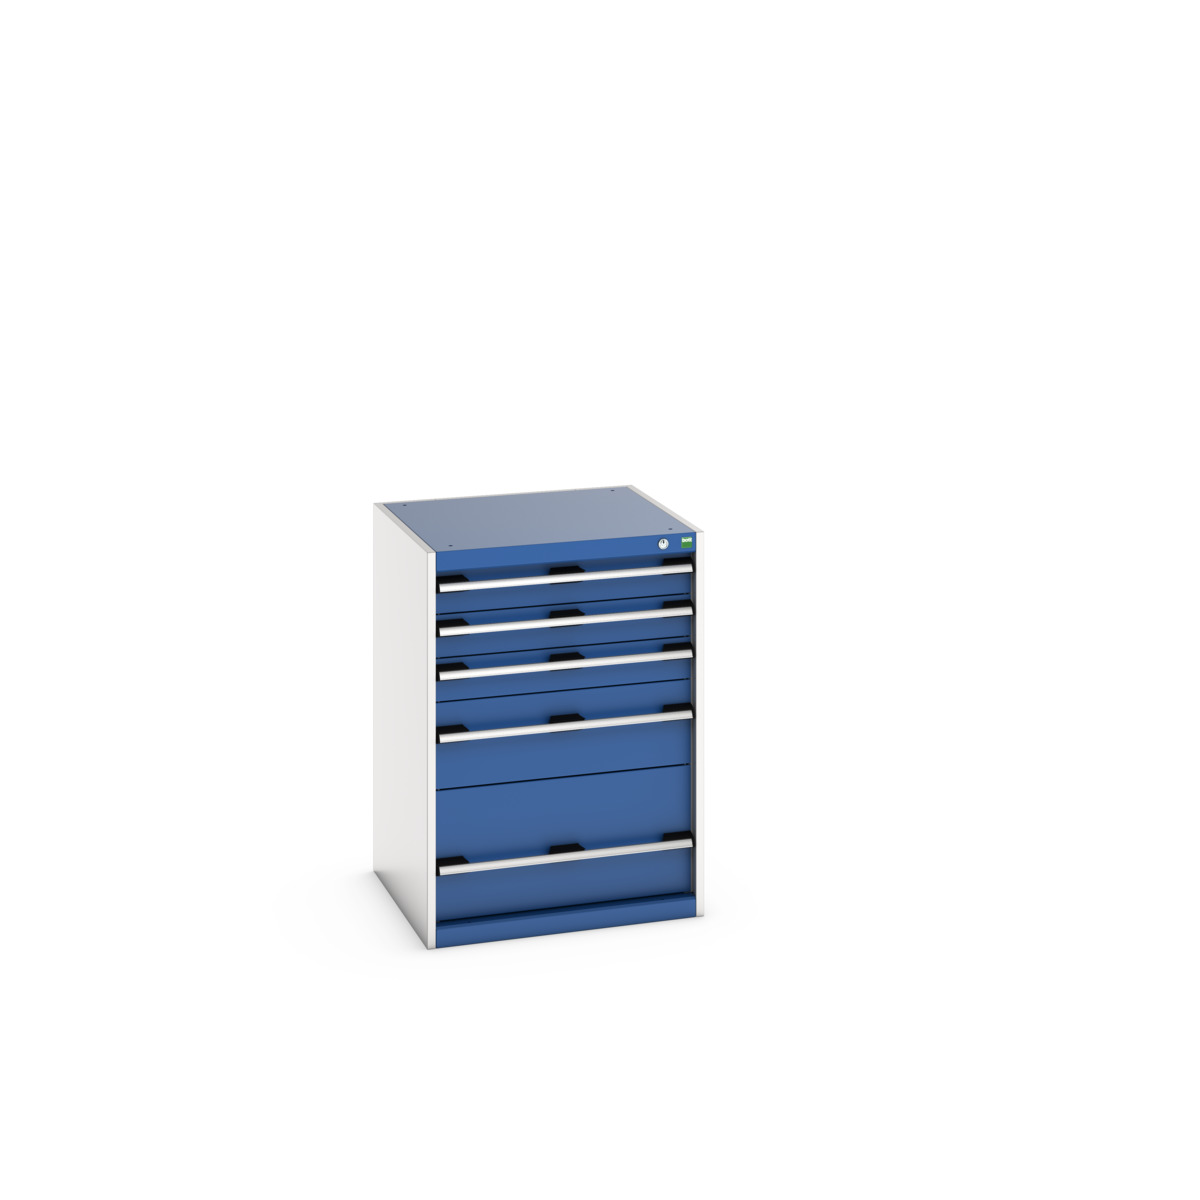 40019045.11V - cubio drawer cabinet